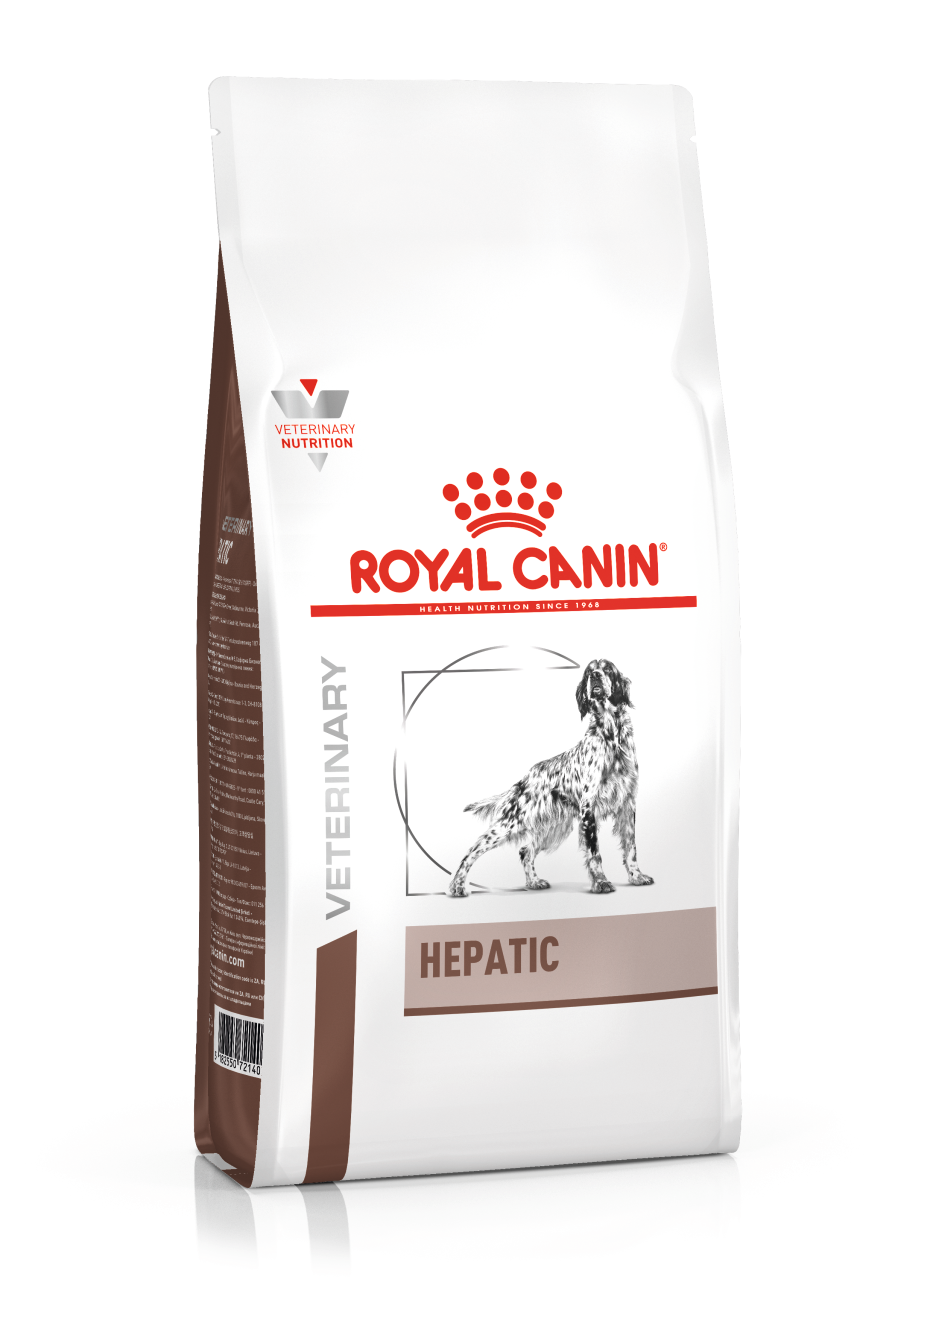 Royal Canin Hepatic hond 2x 7 kg (nieuw gewicht!)